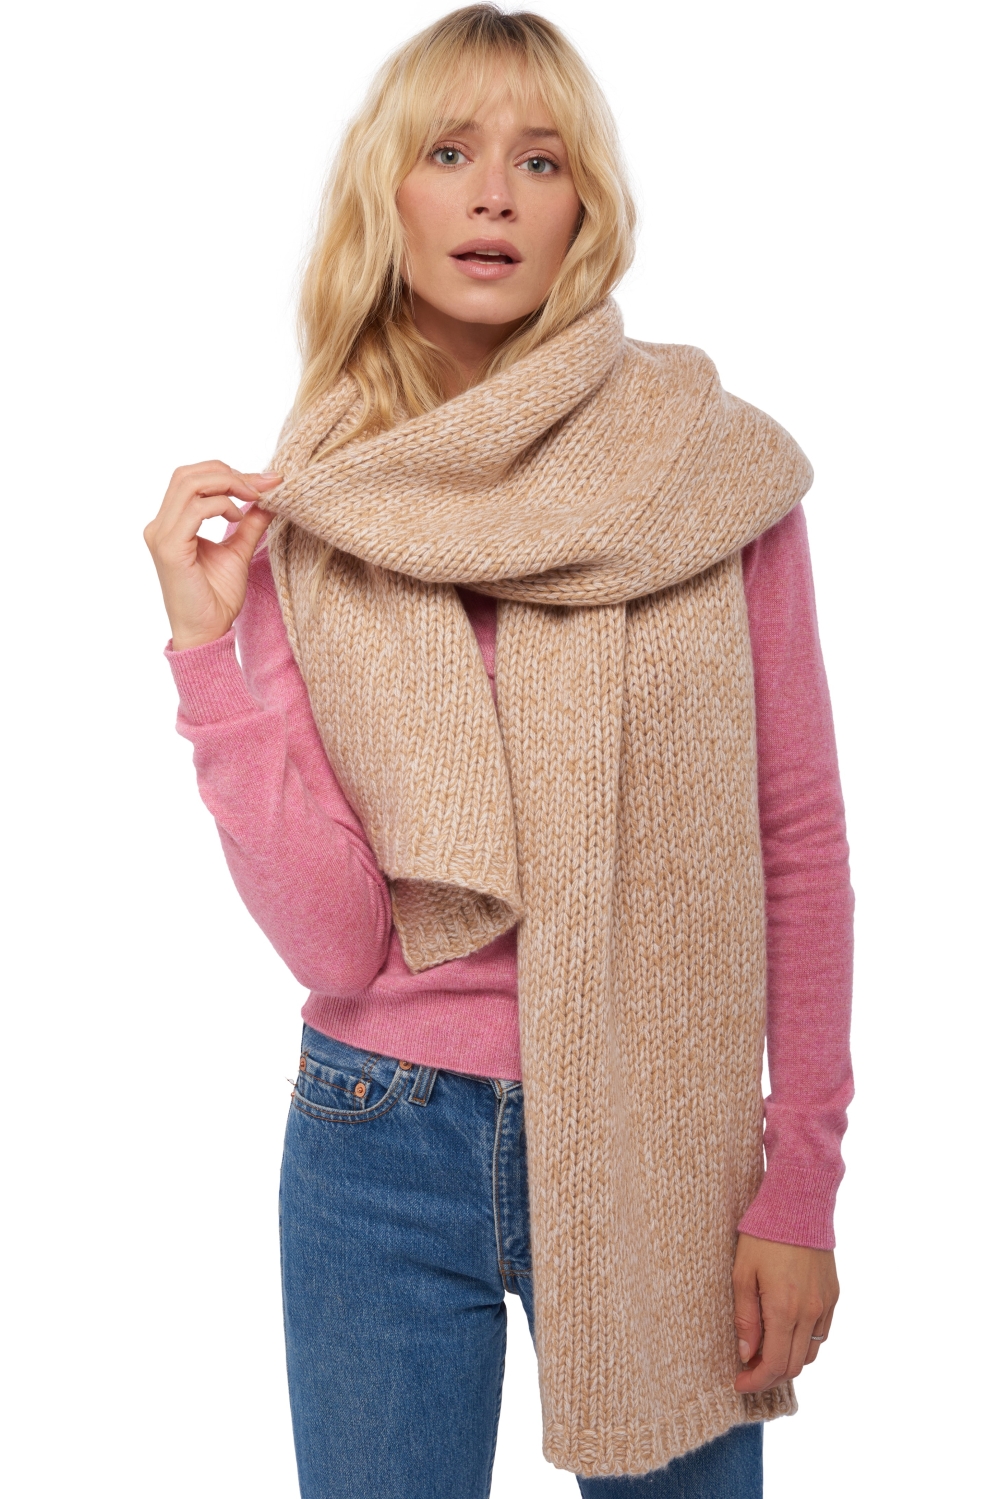 Cashmere accessori sciarpe  foulard venus cammello   rosa pallido 200 x 38 cm